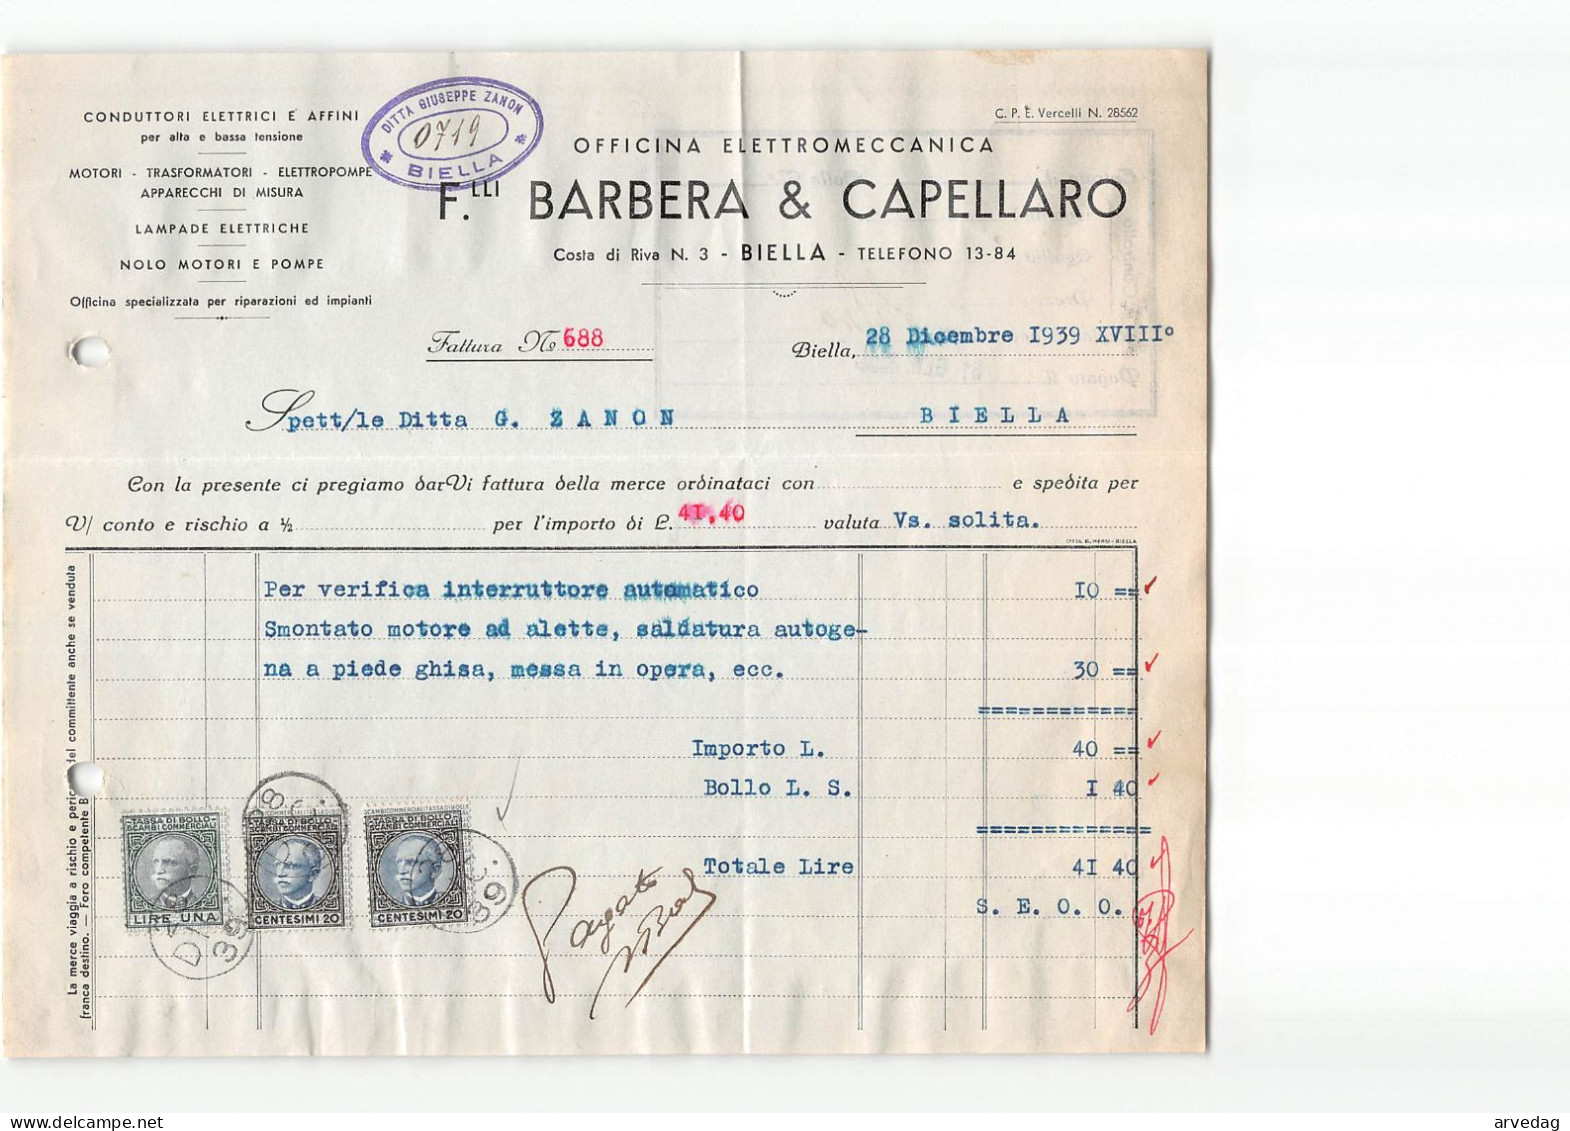 AG2607 BARBERA & CAPELLARO OFFICINA ELETTROMECCANICA - FATTURA - Italie